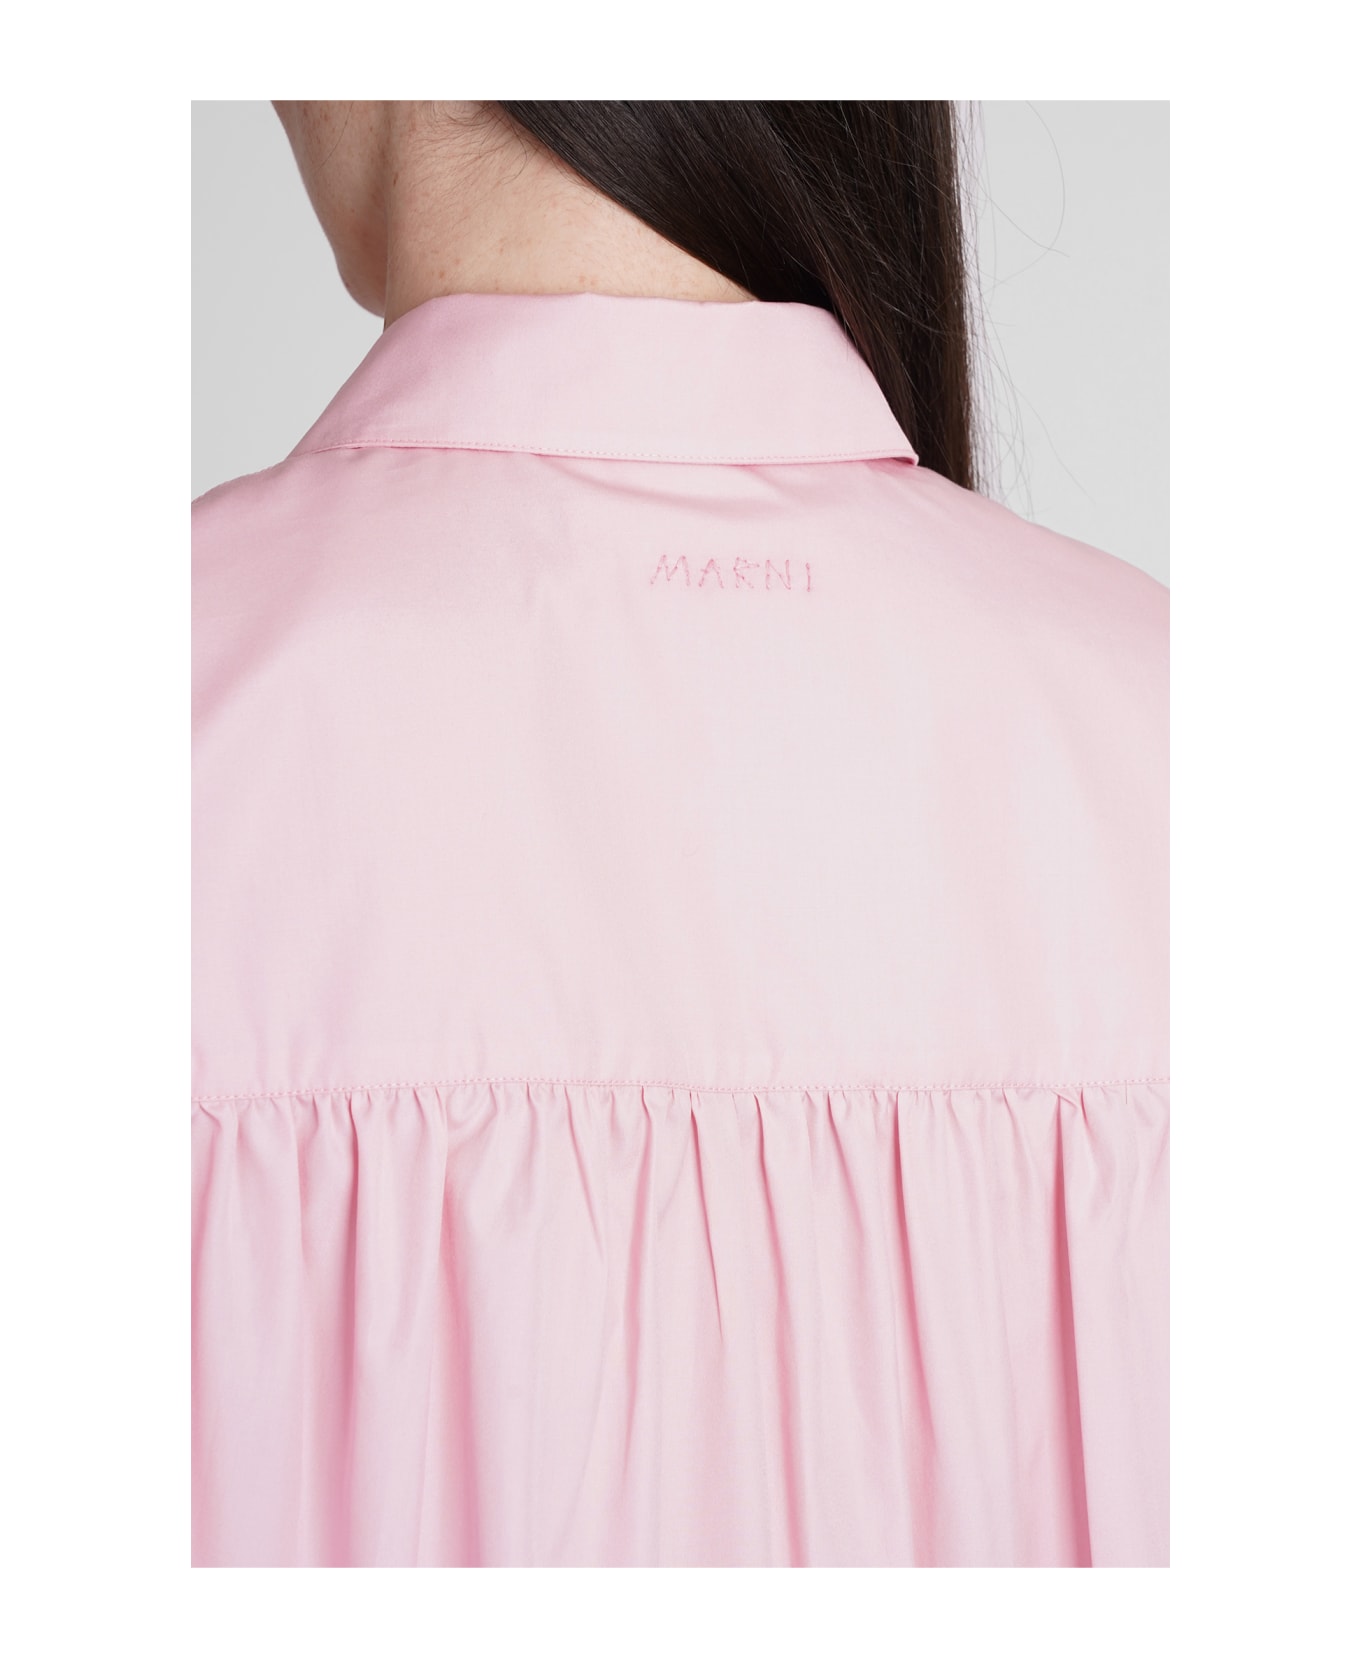 Marni Shirt In Rose-pink Cotton - rose-pink